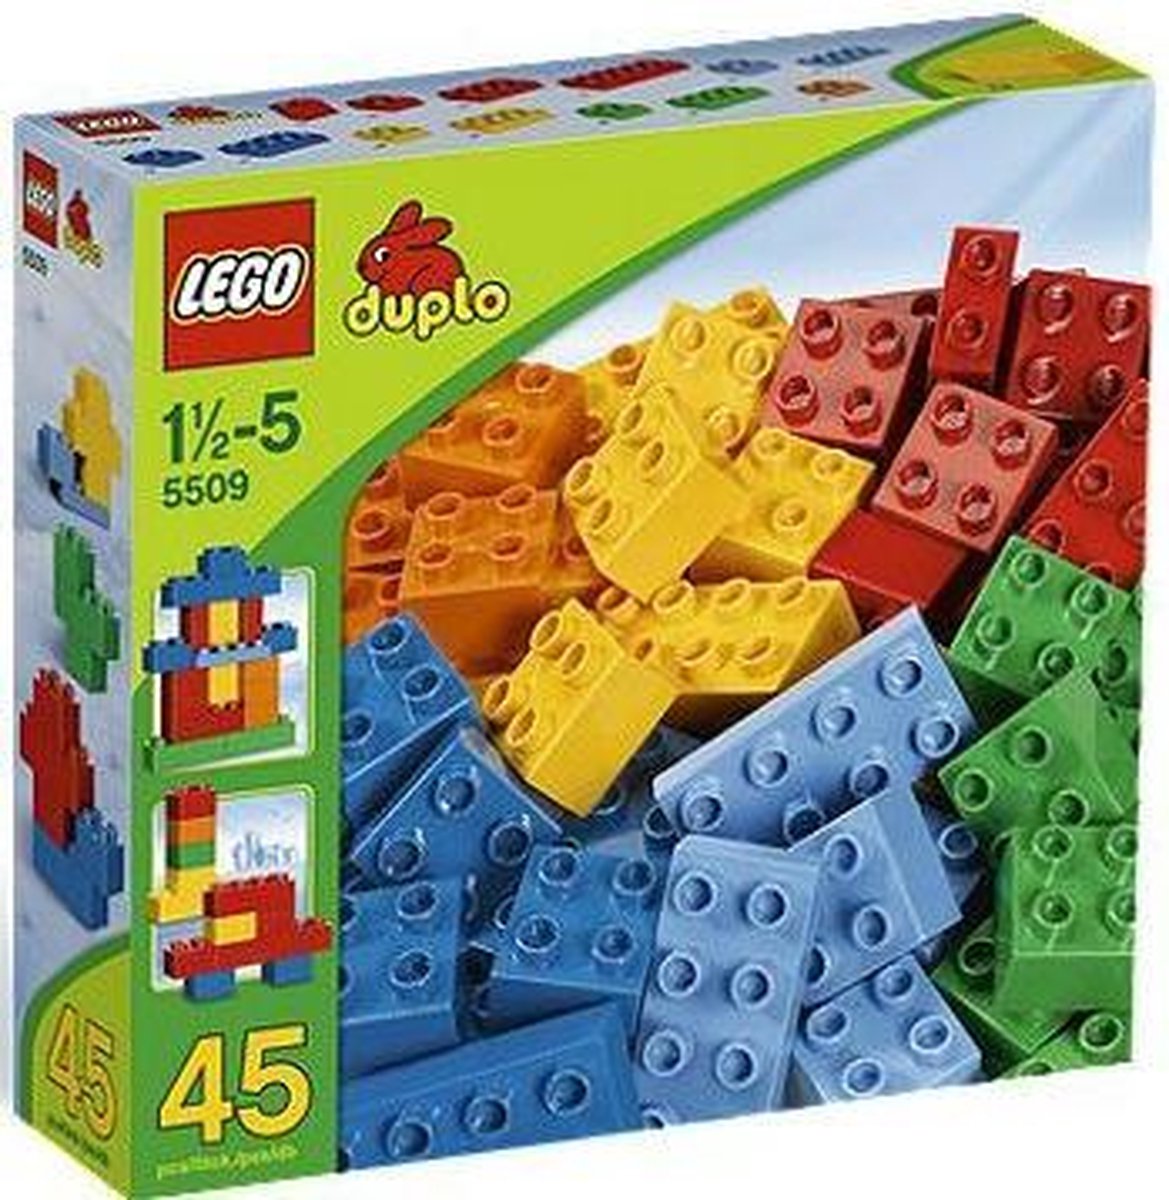 LEGO Duplo Standaard - 5509 | bol.com